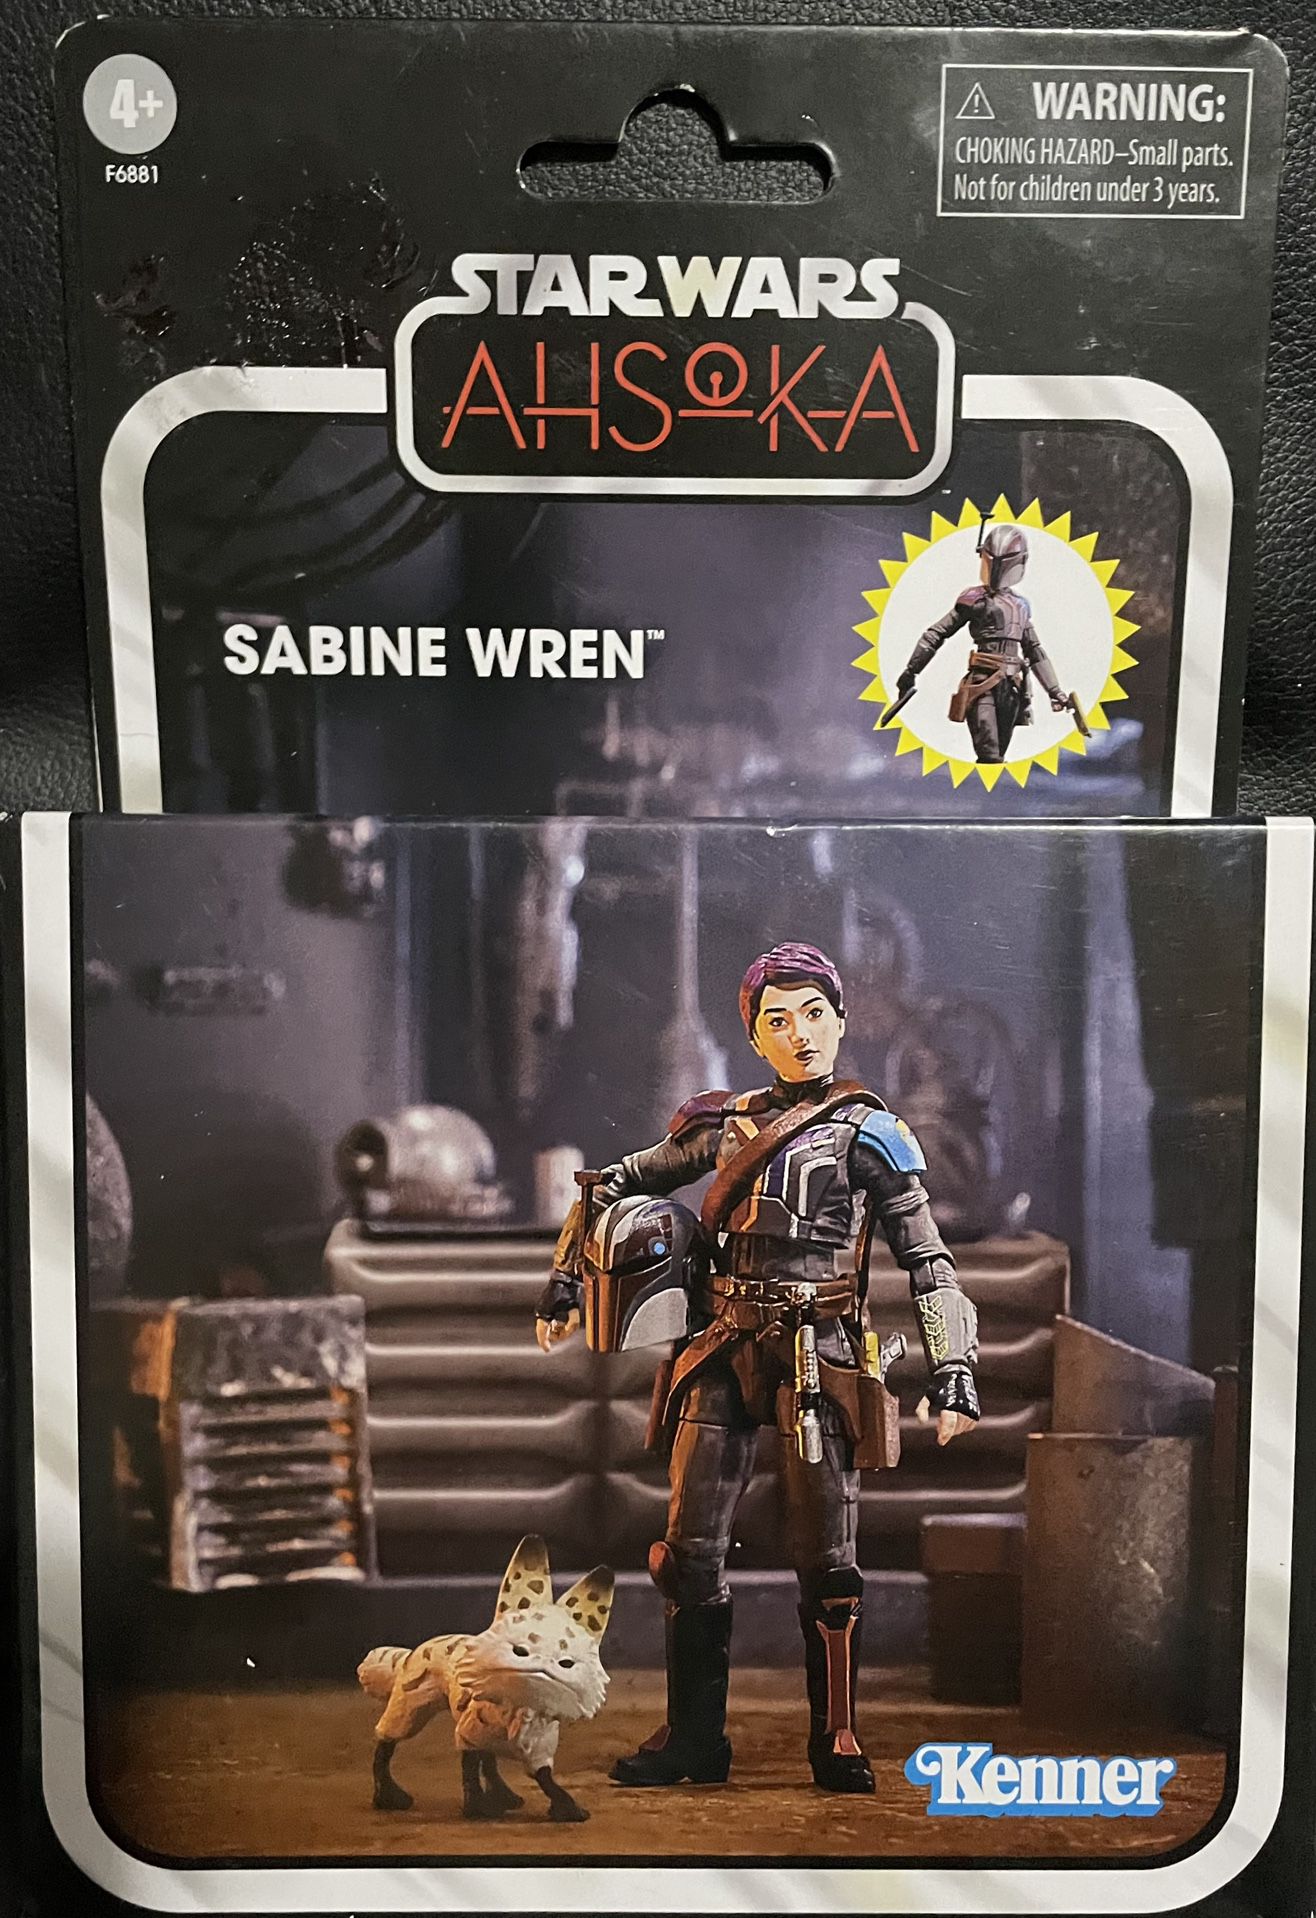 STAR WARS AHSOKA - Sabine Wren